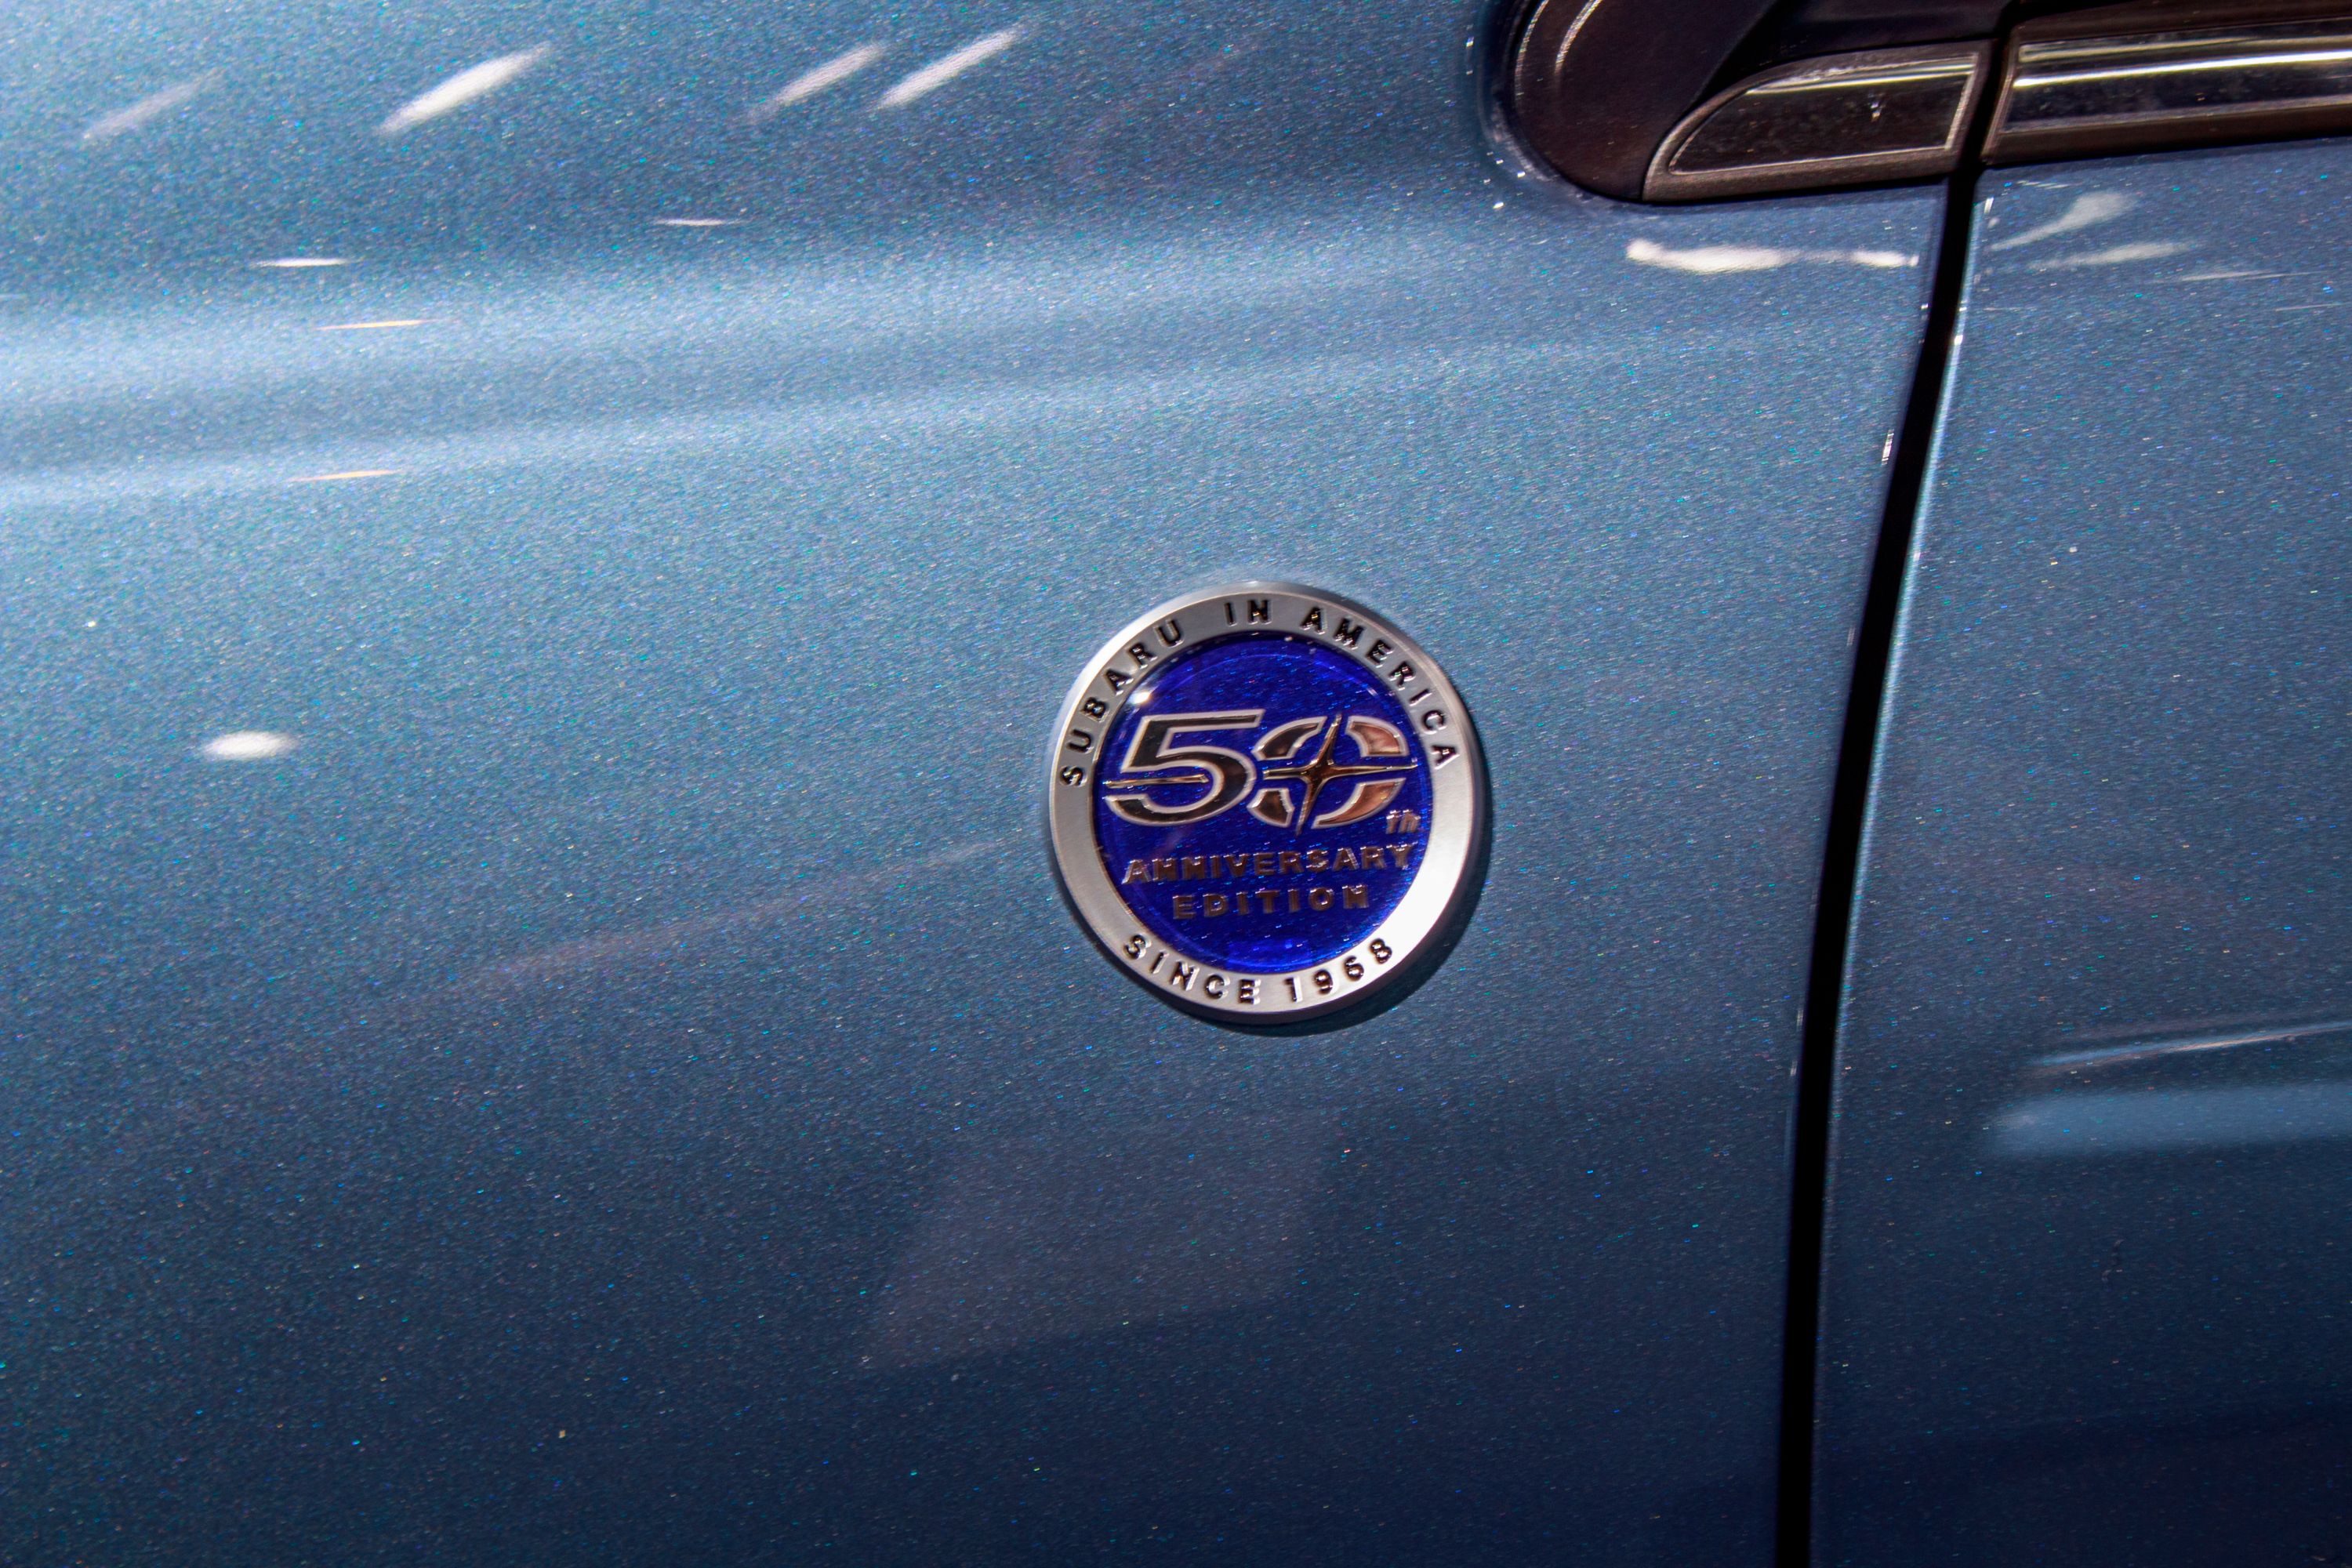 2018 Subaru Forester 50th Anniversary Edition